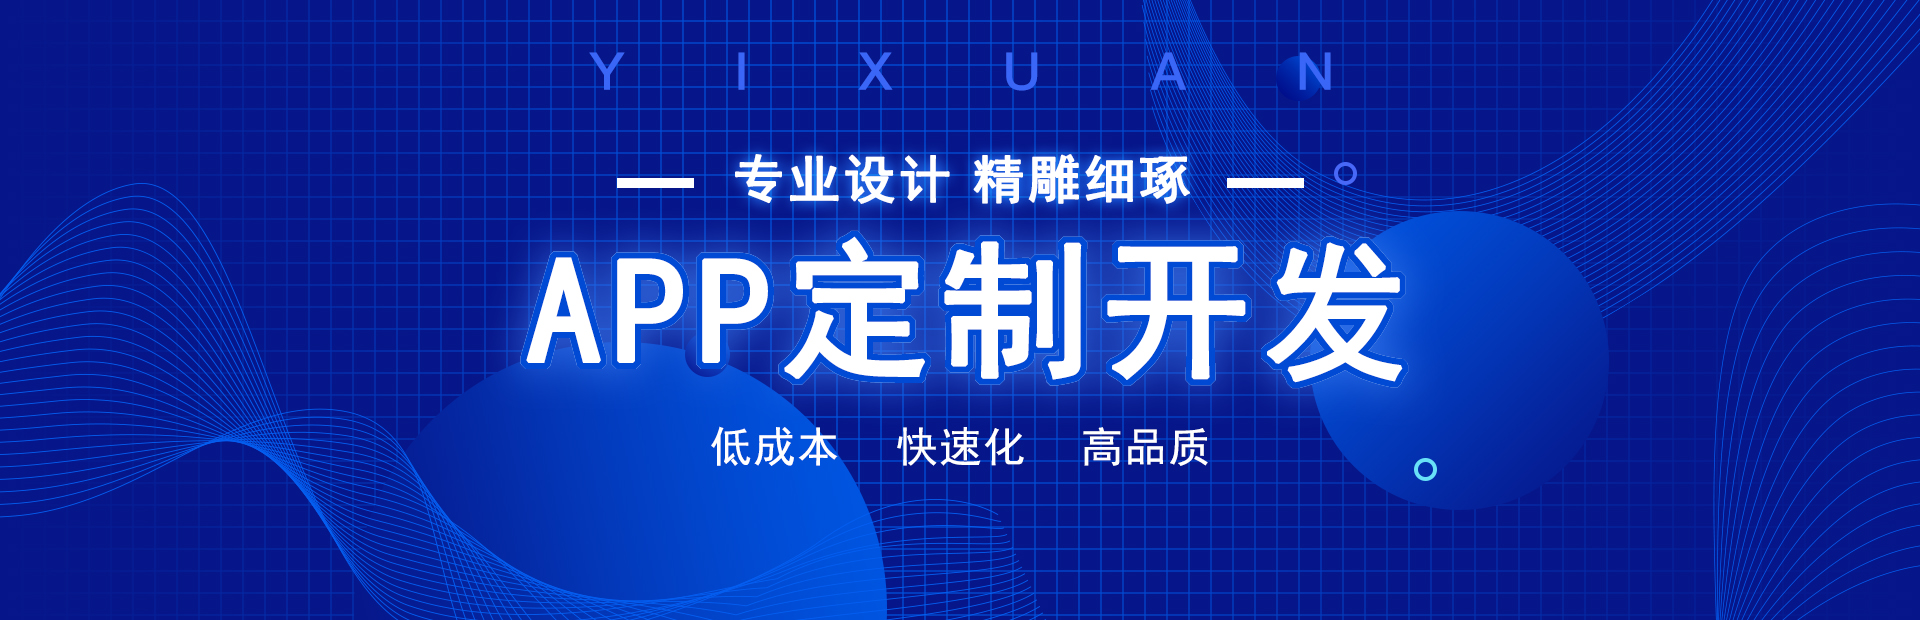 专业的郑州app开发制作、郑州小程序开发公司，原生定制，满足企业客户的定制开发需求